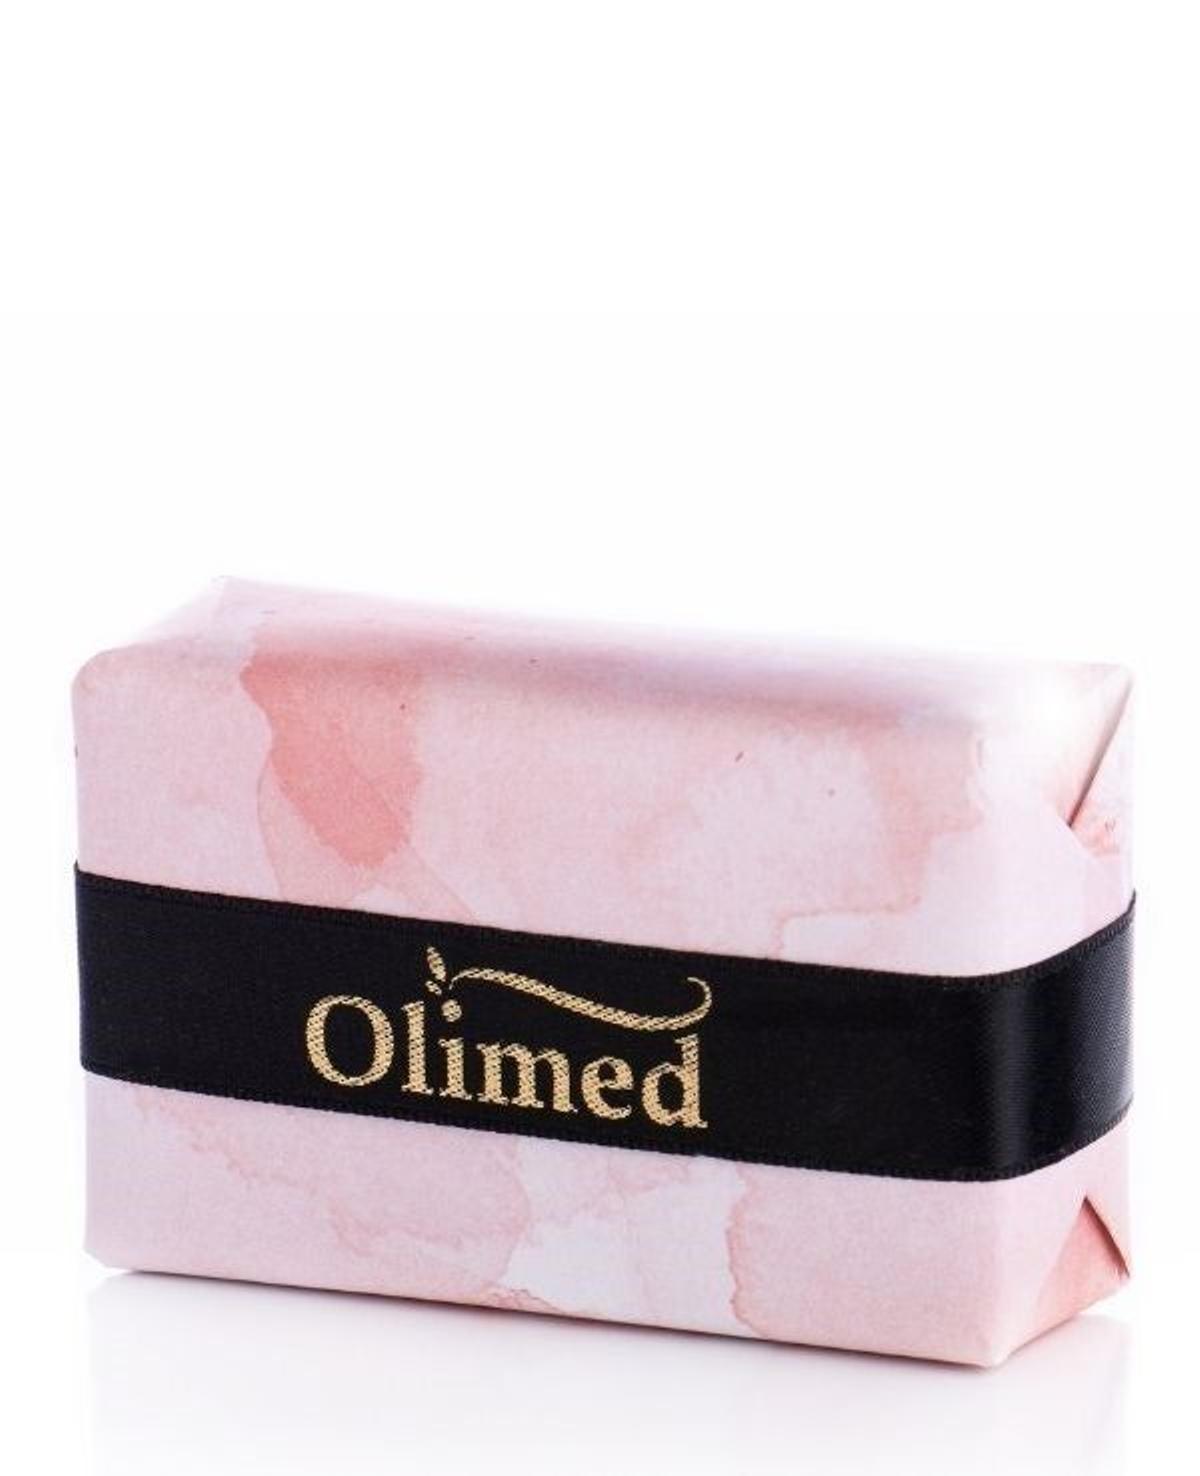 Jabón facial de Olimed (Precio: 7,50 euros)